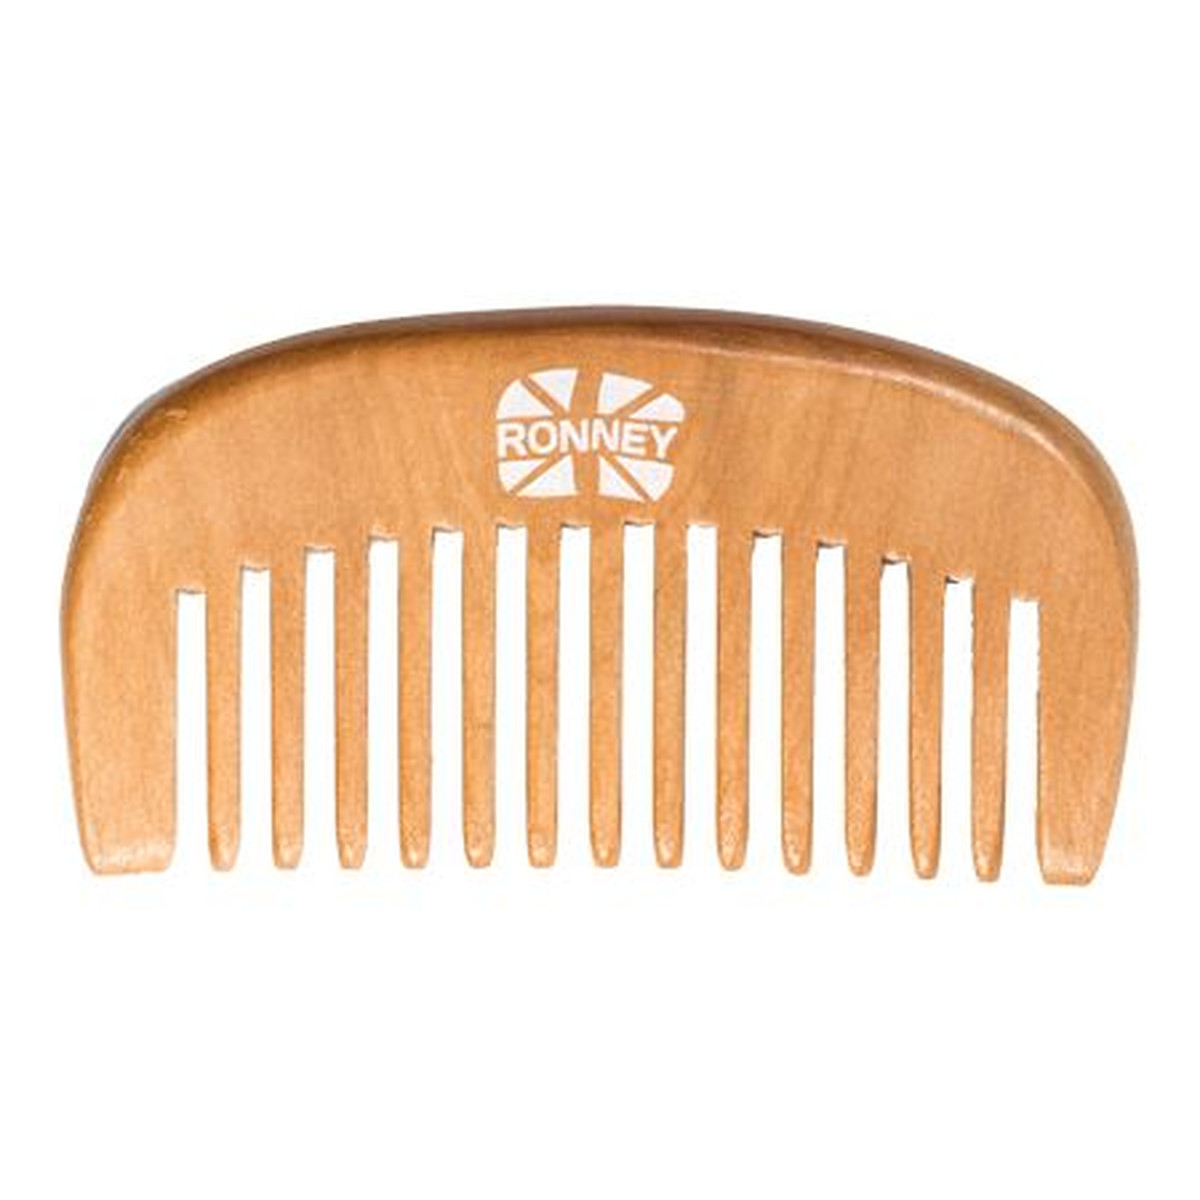 Ronney Professional wooden comb profesjonalny drewniany grzebień do włosów 96.5x52mm ra 00119